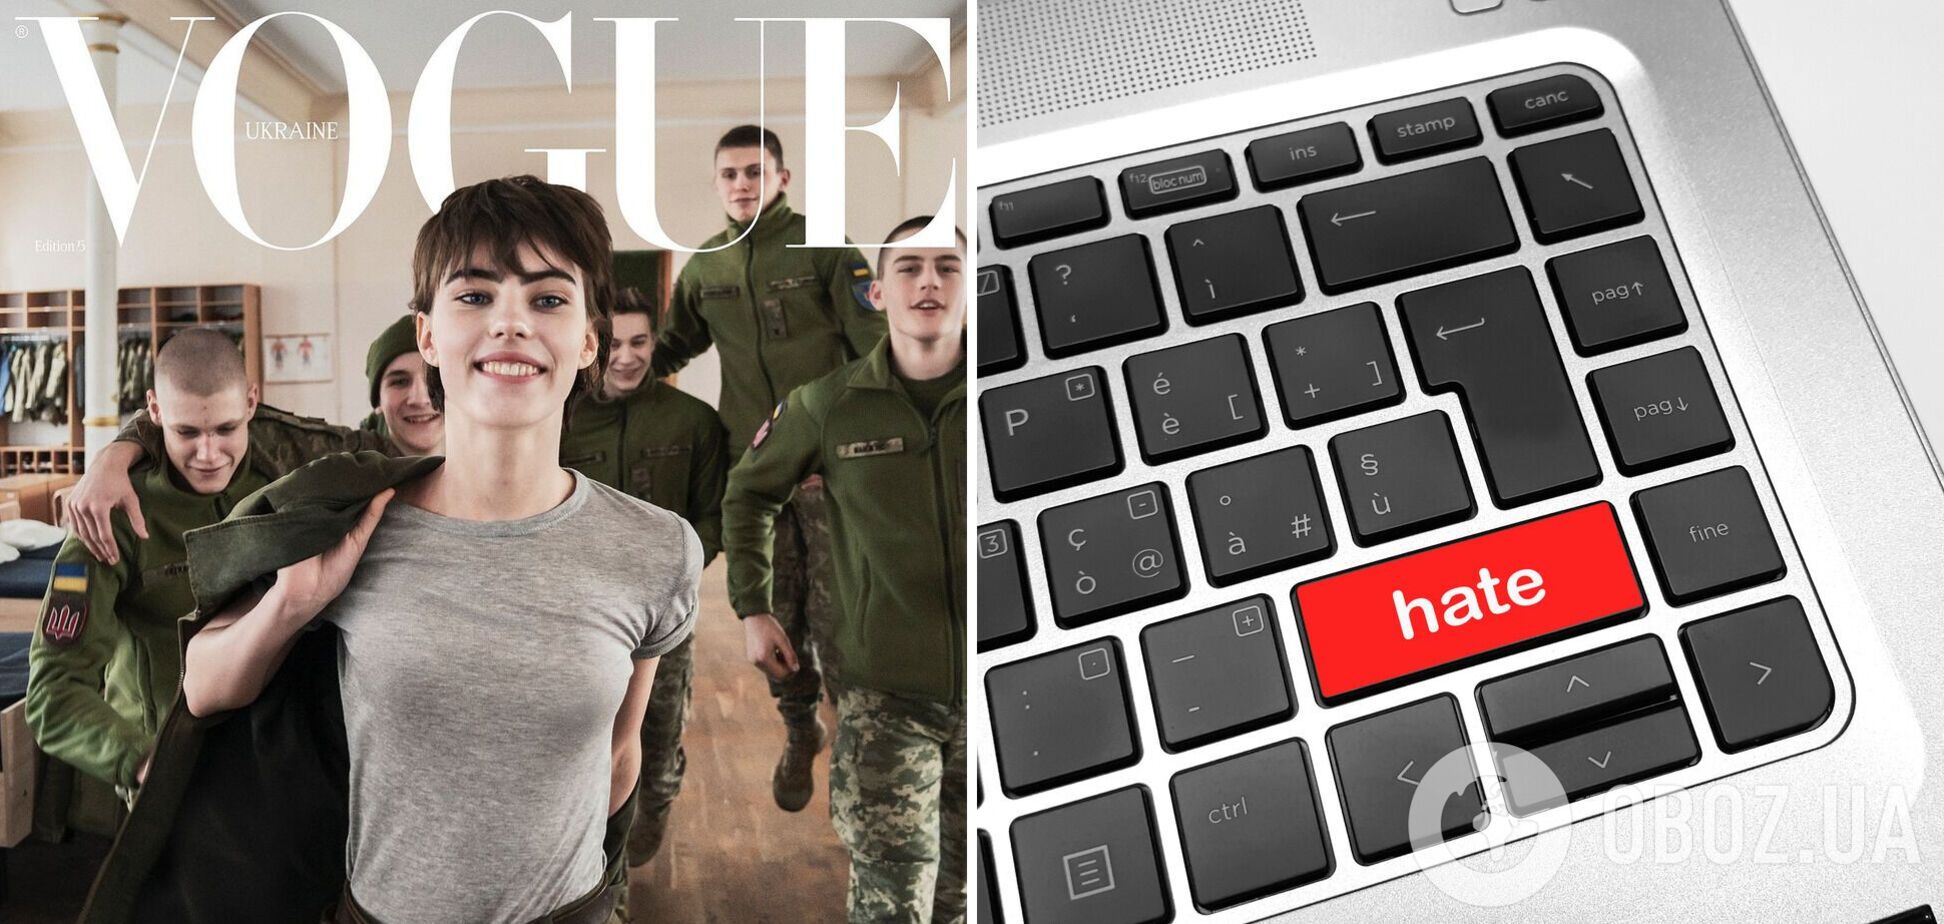 'Може, не будемо робити гламур із війни?' У мережі спалахнув скандал навколо обкладинки Vogue, де модель позує у військовій формі